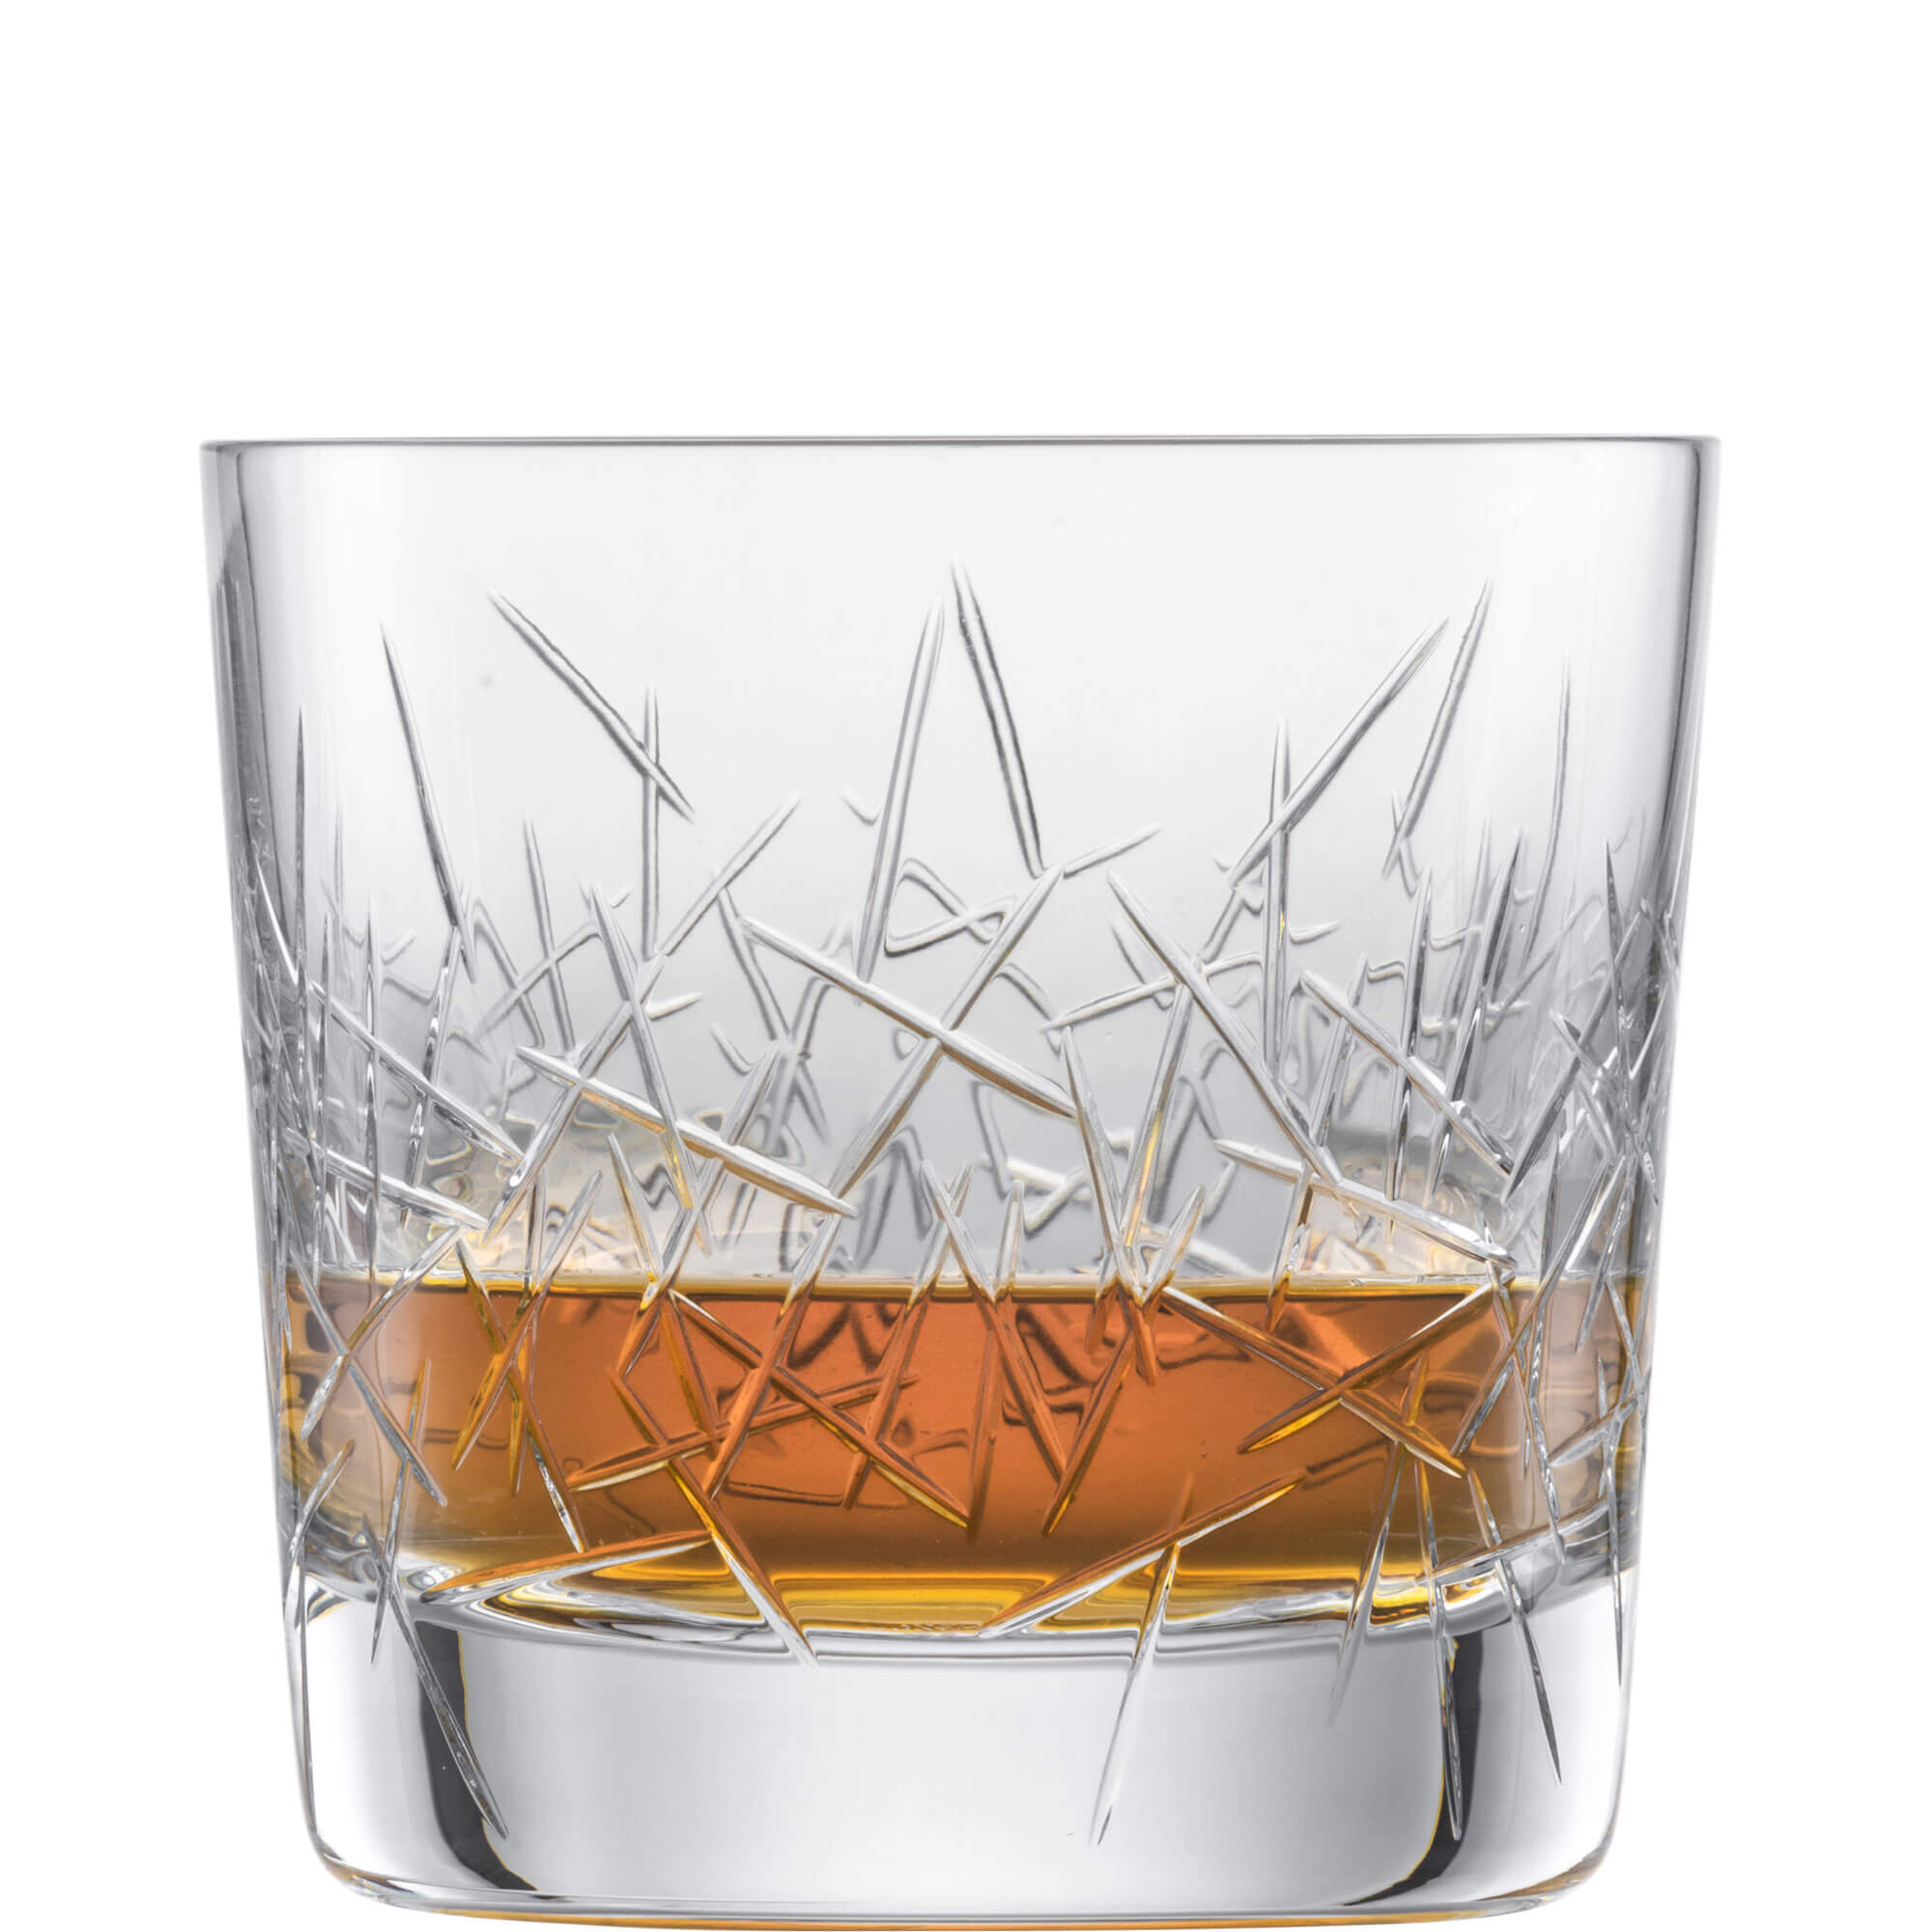 Whiskyglas Hommage Glace, Zwiesel Glas - 399ml (1 Stk.)